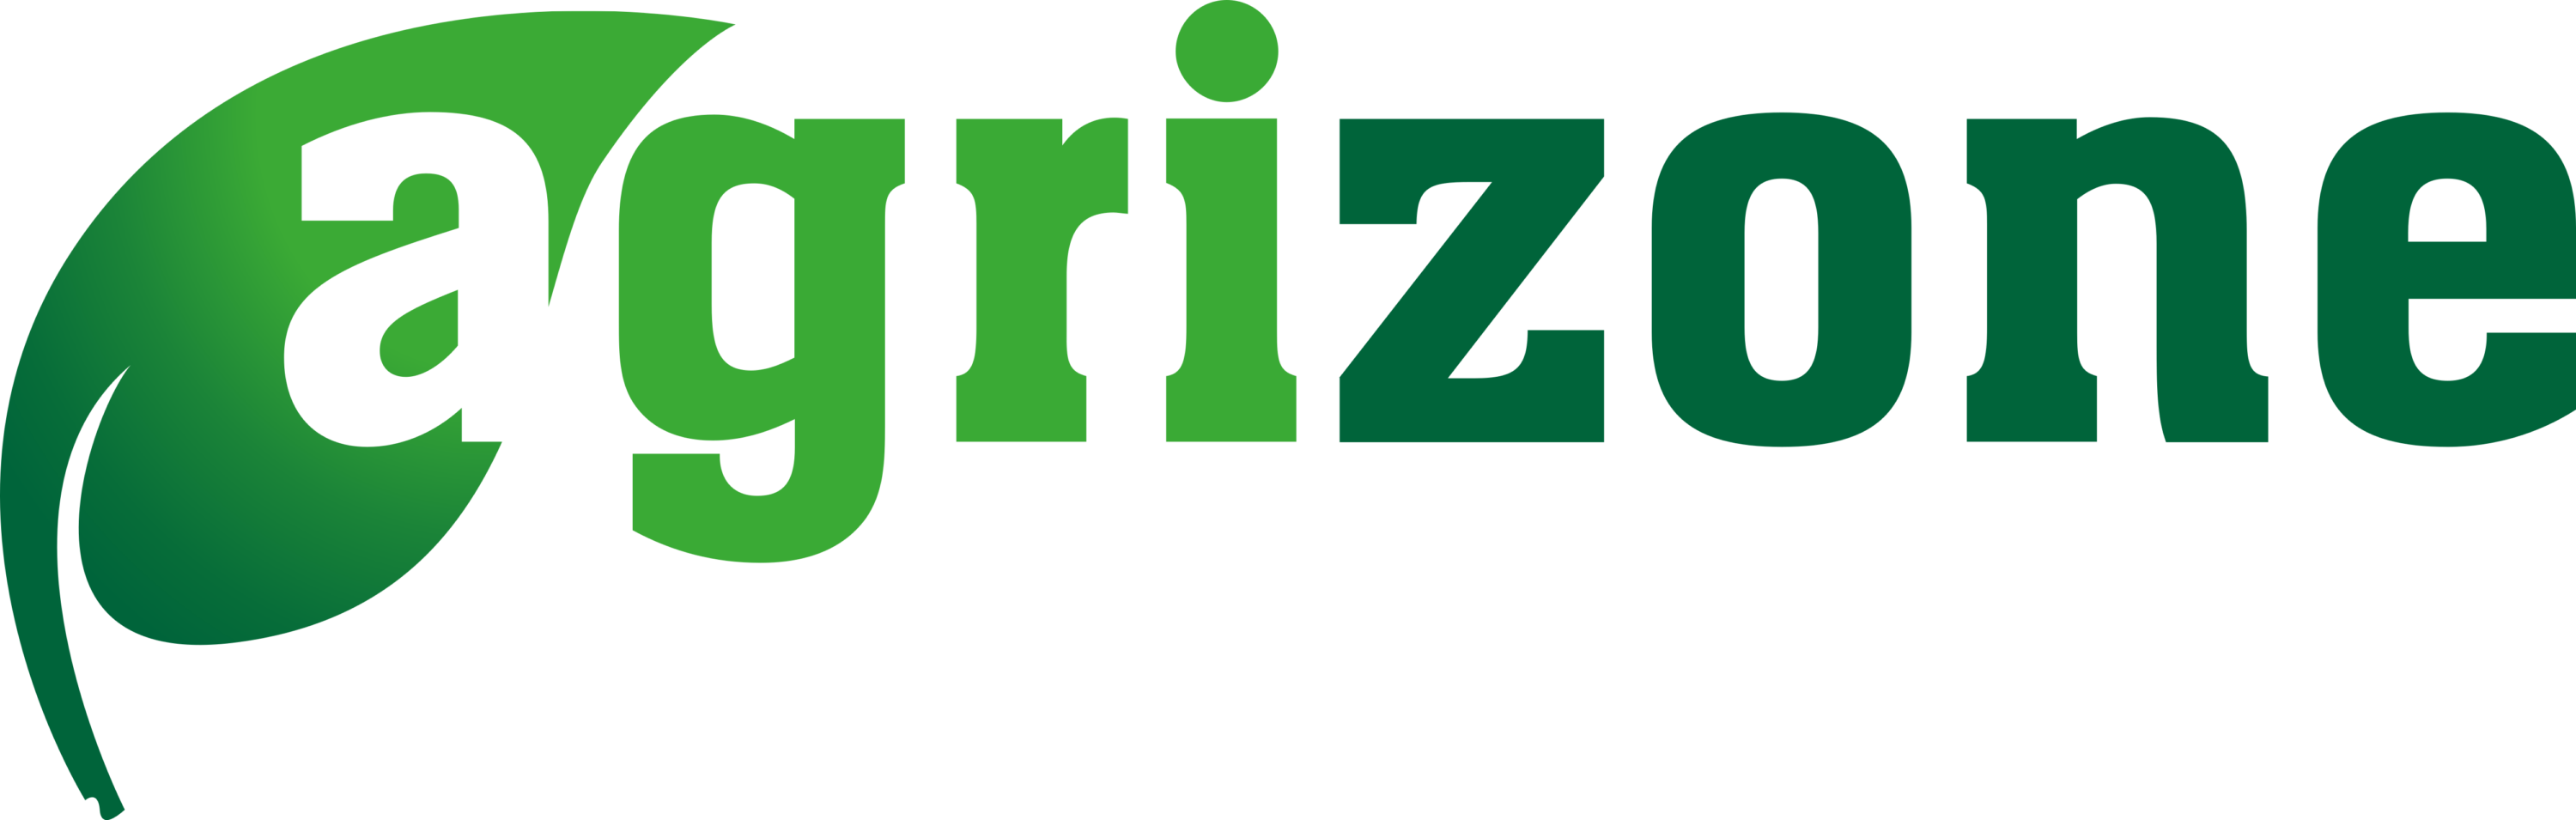 Agrizone Co Logo